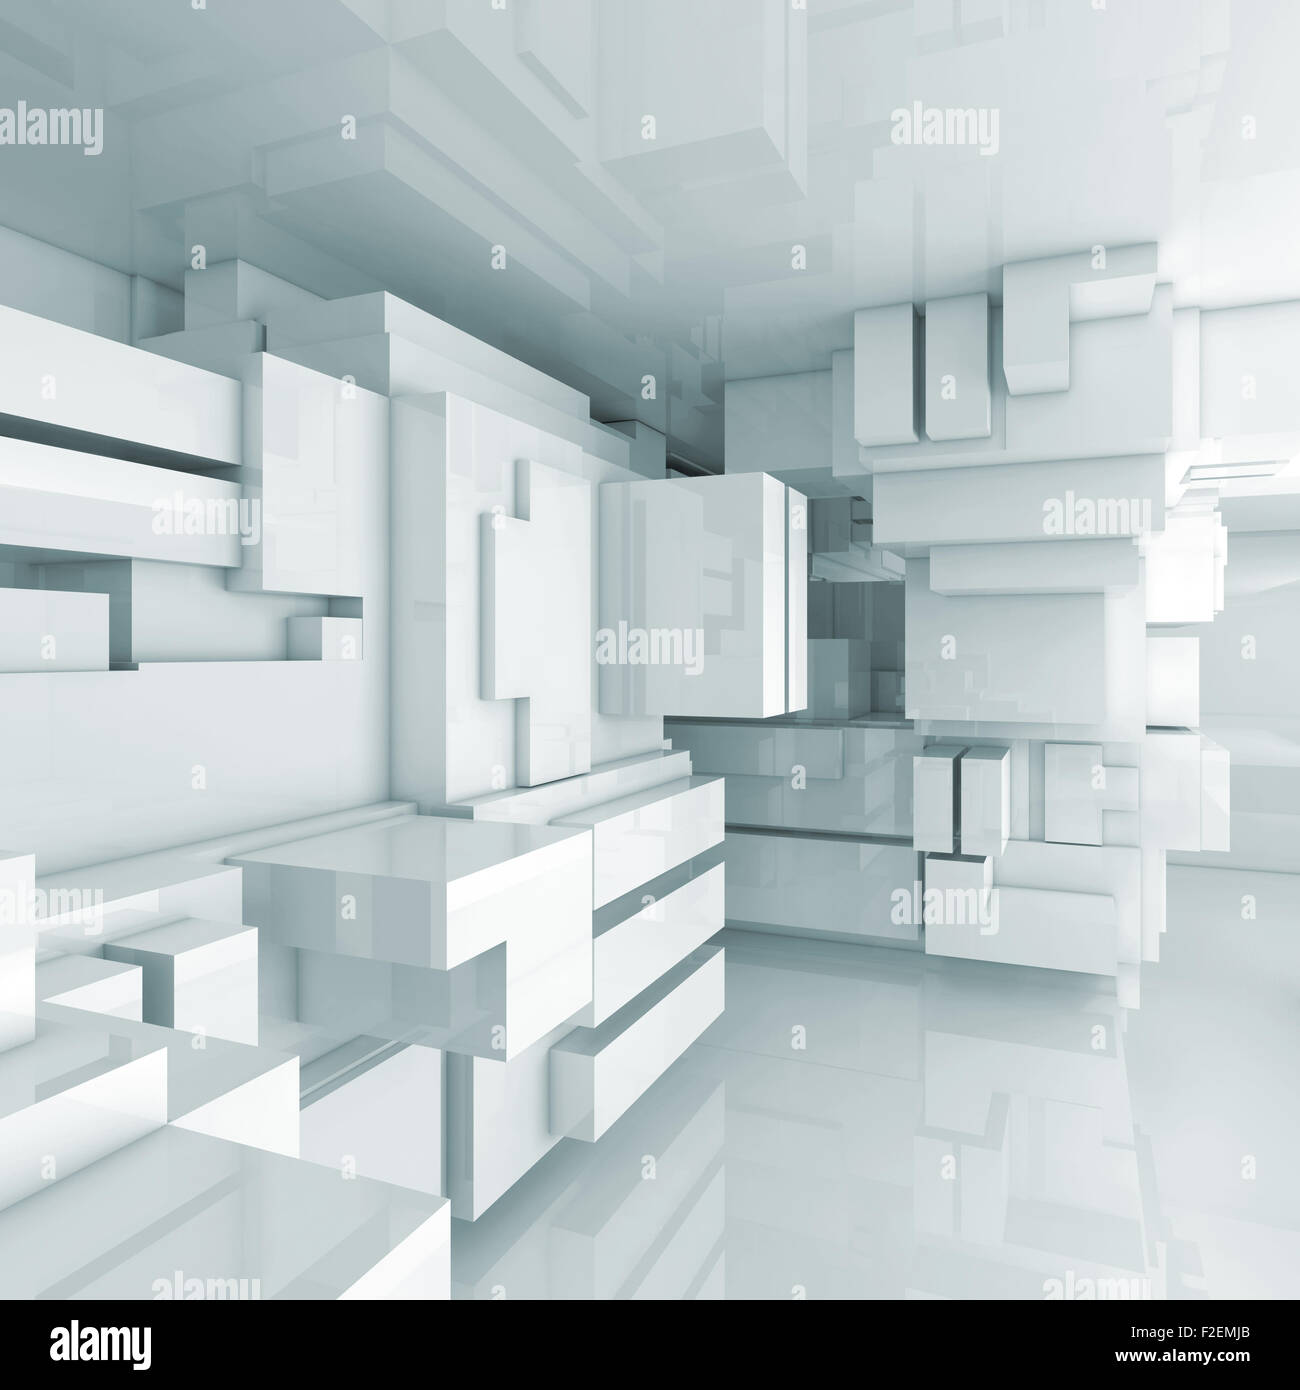 Résumé high-tech vide intérieur avec des cubes chaotique constructions, 3d illustration Banque D'Images